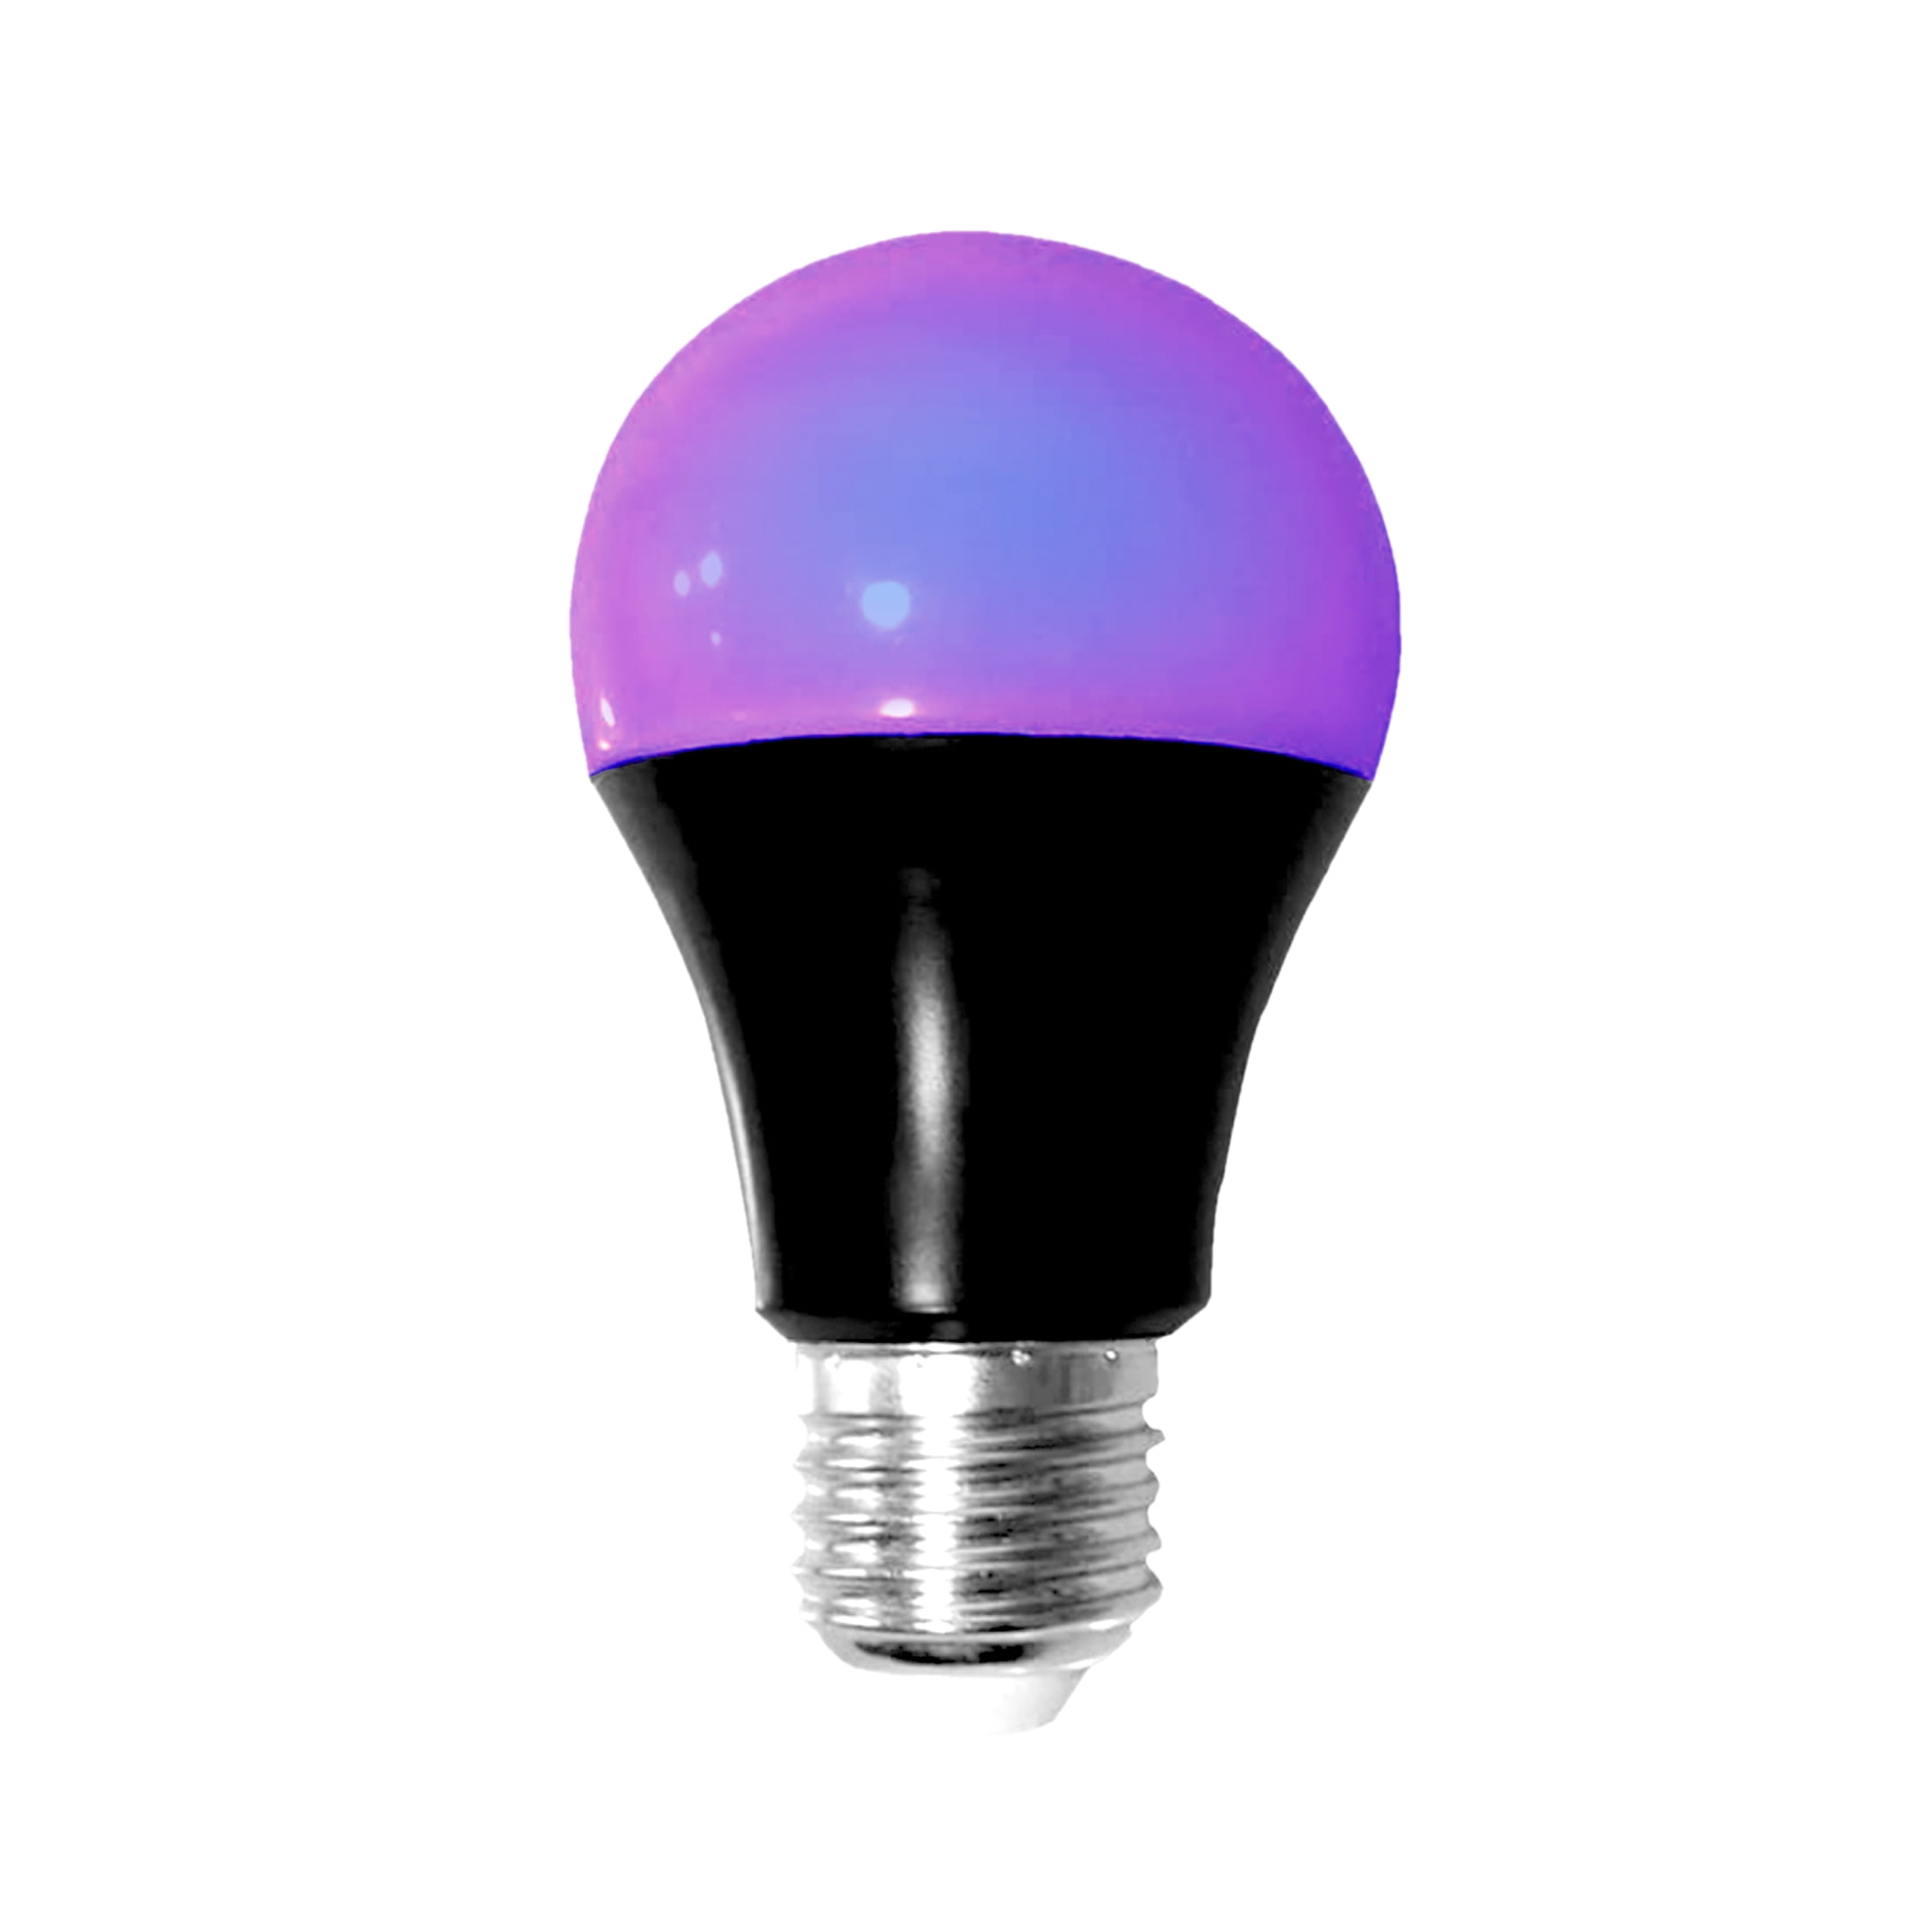 Ledeez LED Light Bulb, Black Light, Neon UV Light, 6W, LED Lights for Bedroom